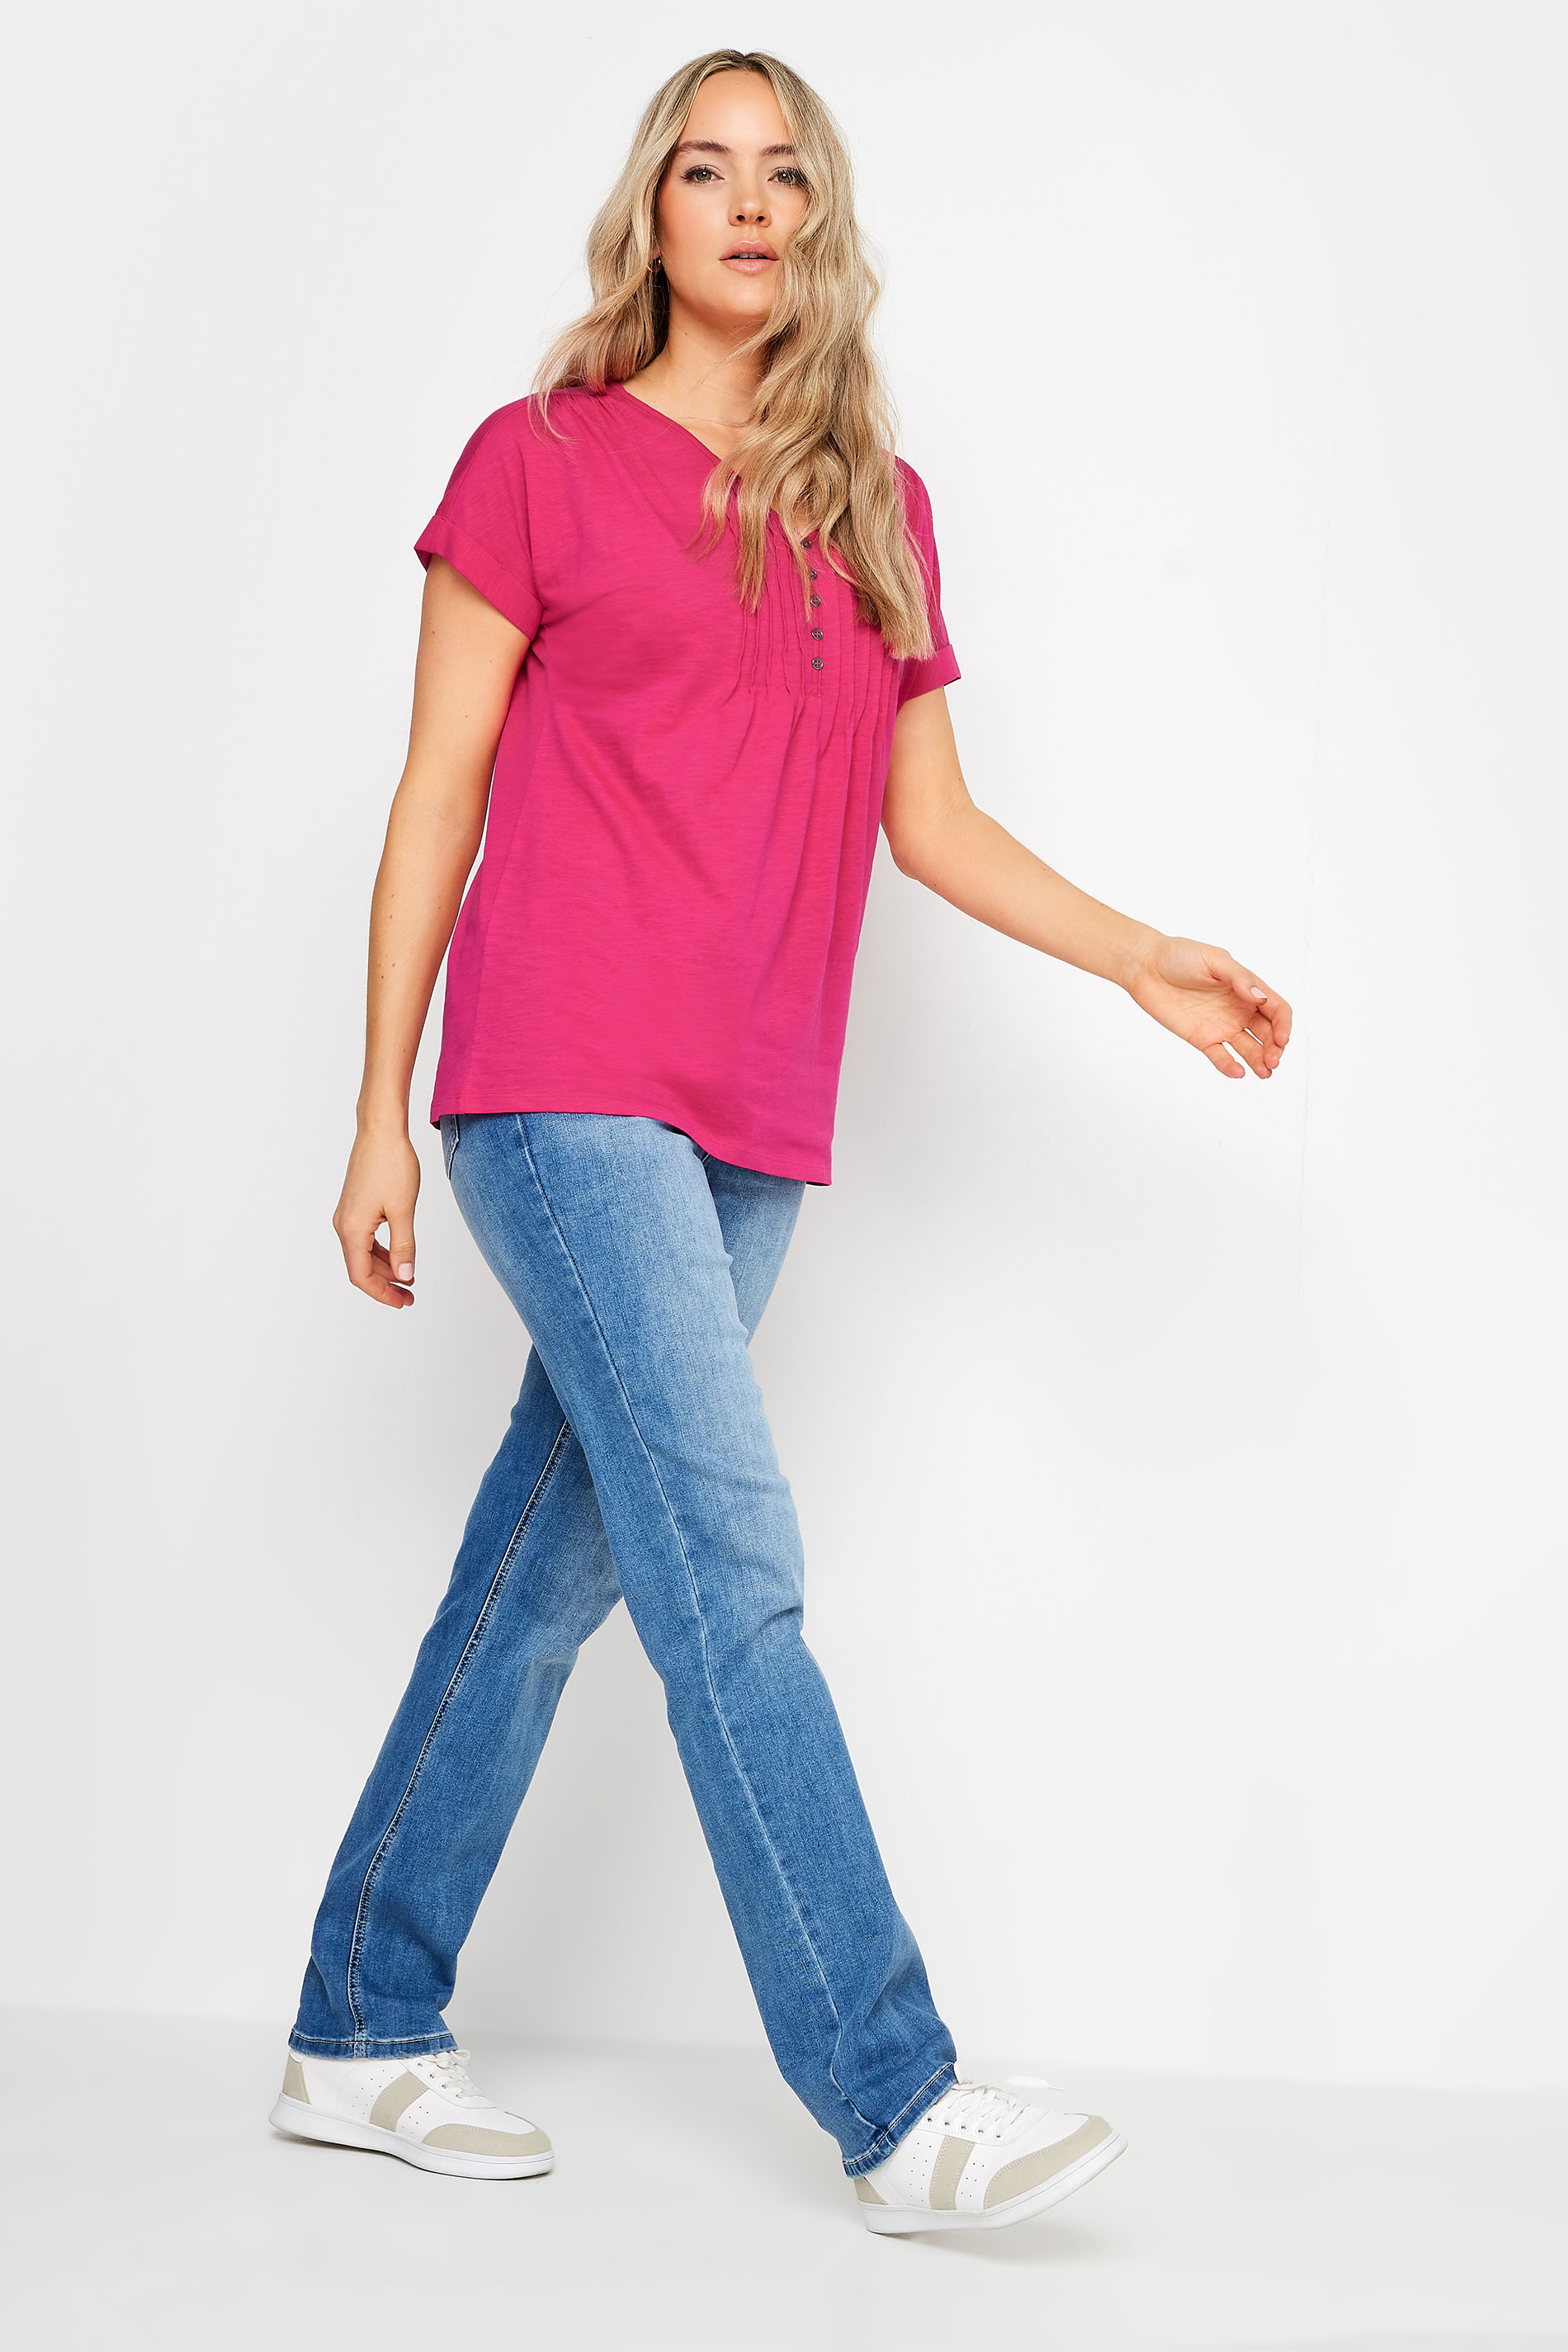 LTS Tall Women's Bright Pink Cotton Henley T-Shirt | Long Tall Sally 2